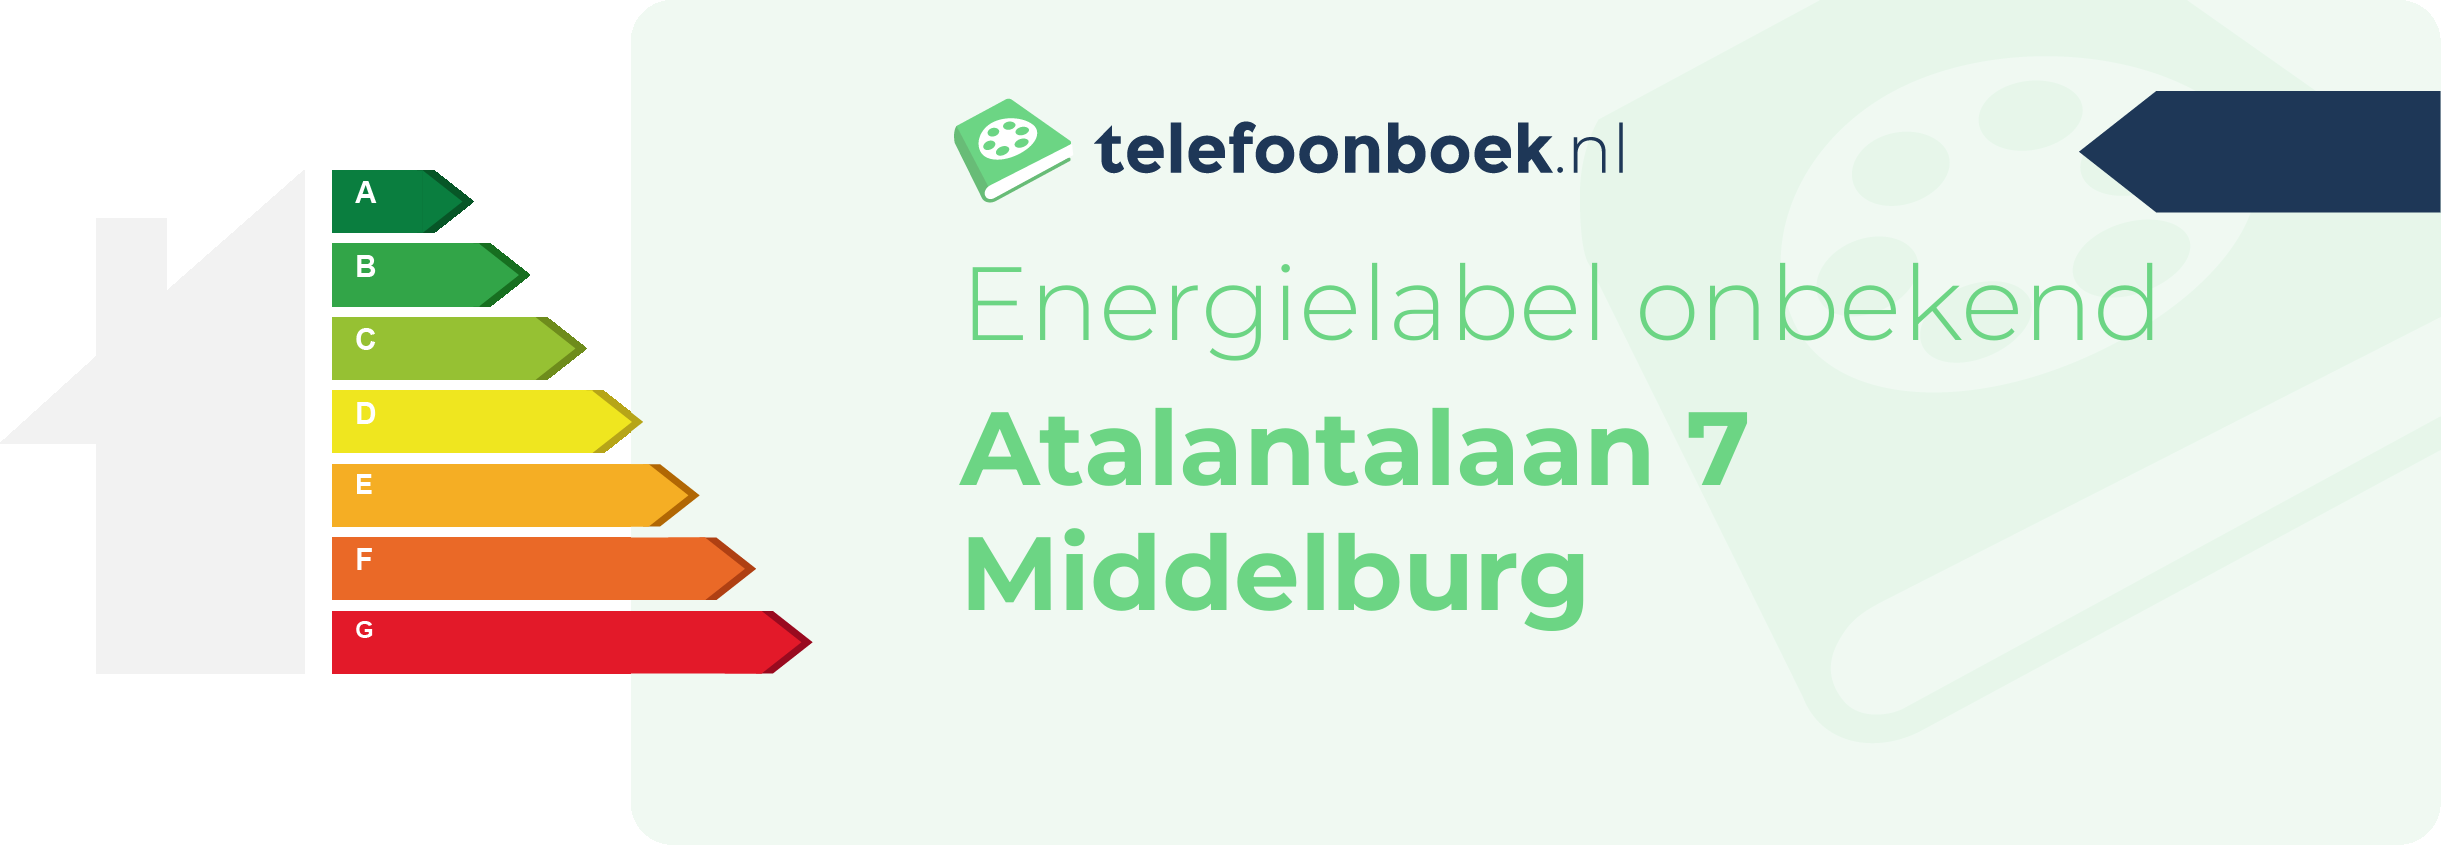 Energielabel Atalantalaan 7 Middelburg